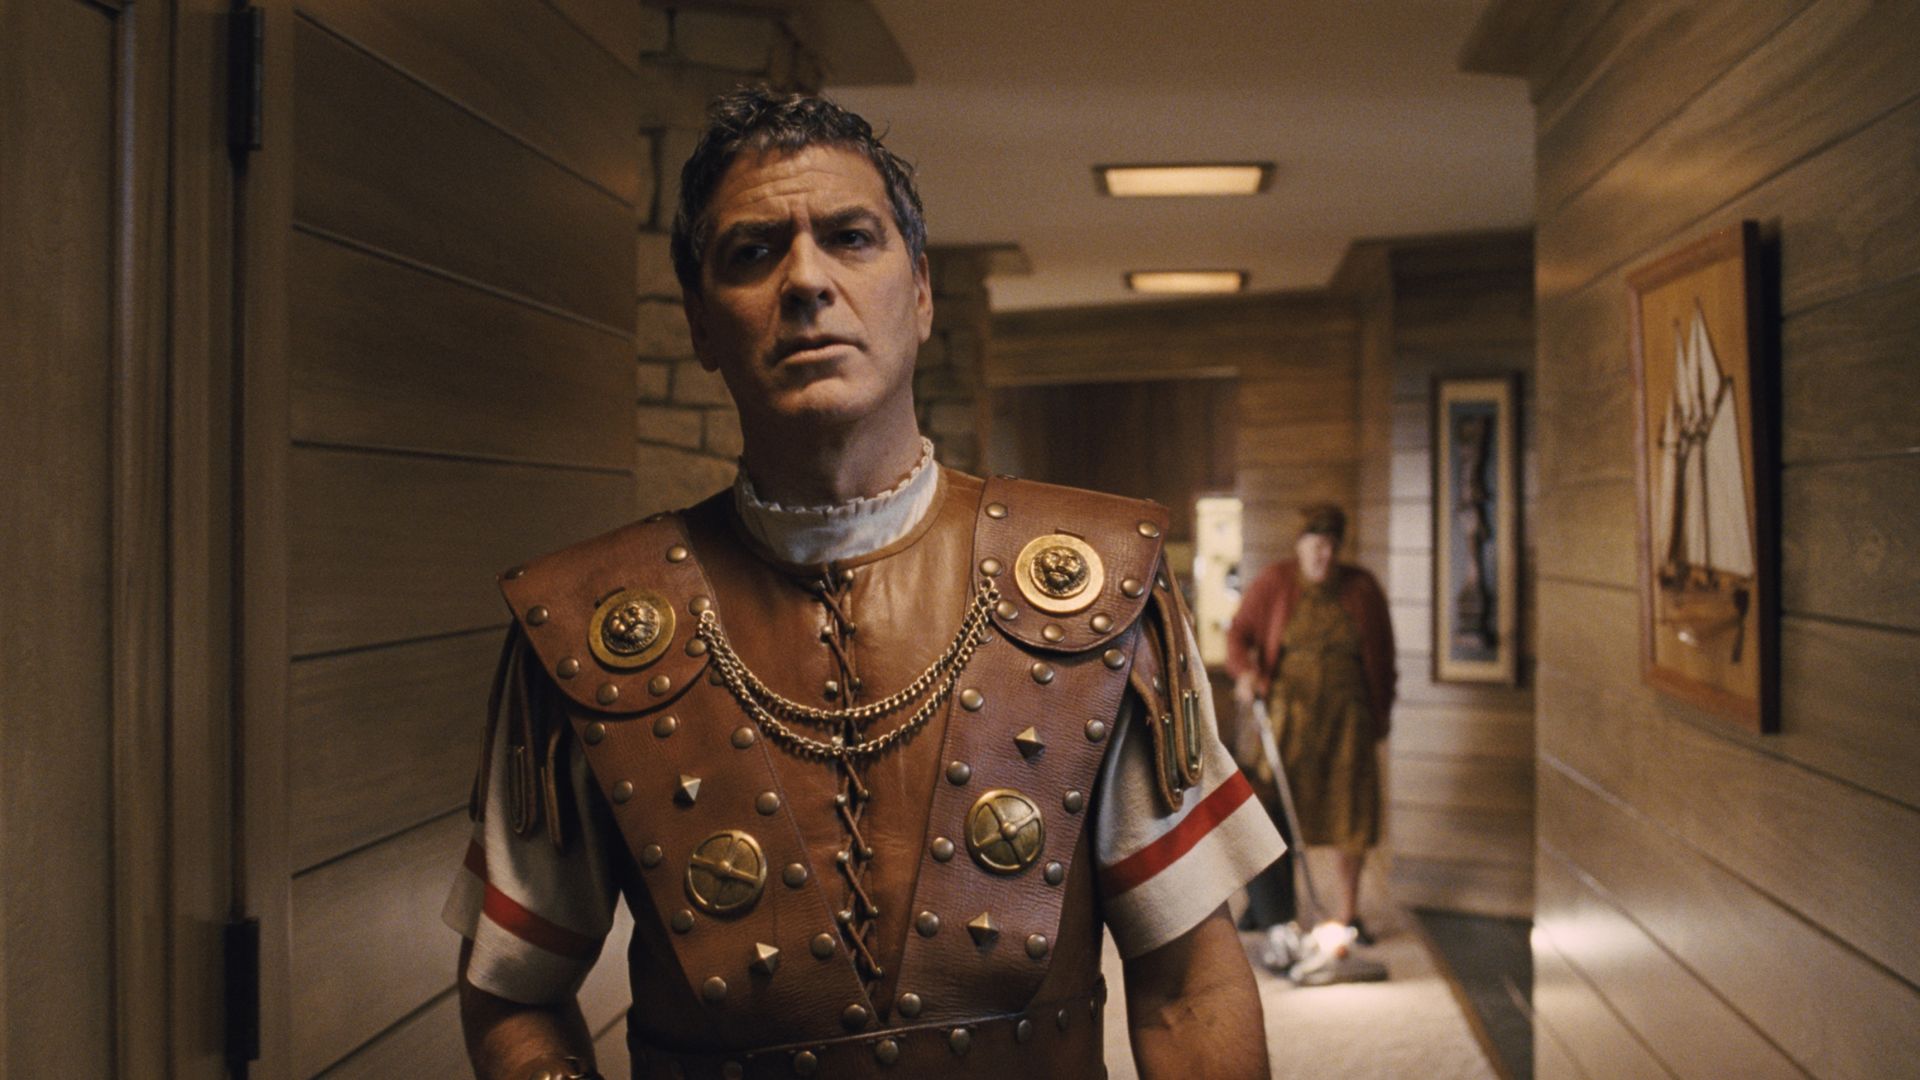 Да здравствует Цезарь!, Джордж Клуни, Лучшие фильмы, кино, детектив, Hail, Caesar!, George Clooney, Best Movies, movie, detective (horizontal)